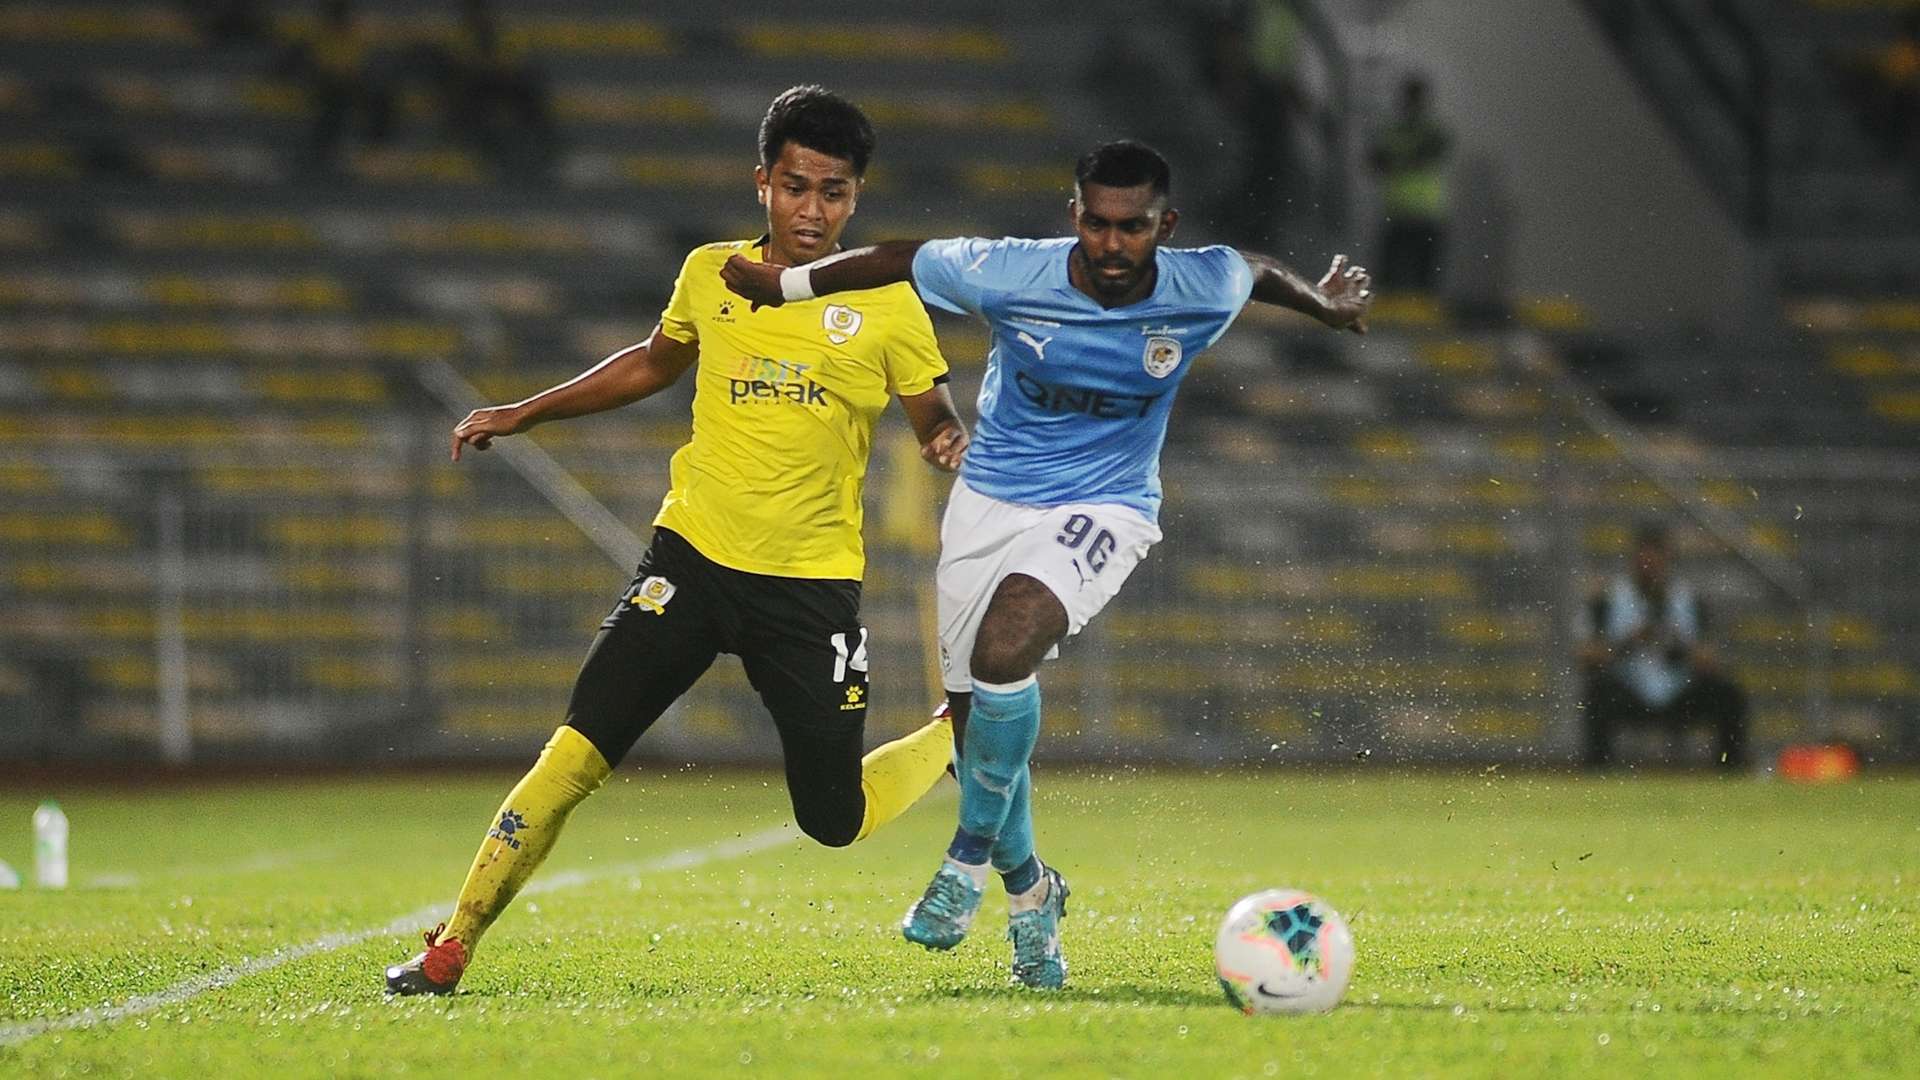 Firdaus Saiyadi, Perak v PJ City FC, Super League, 11 Mar 2020